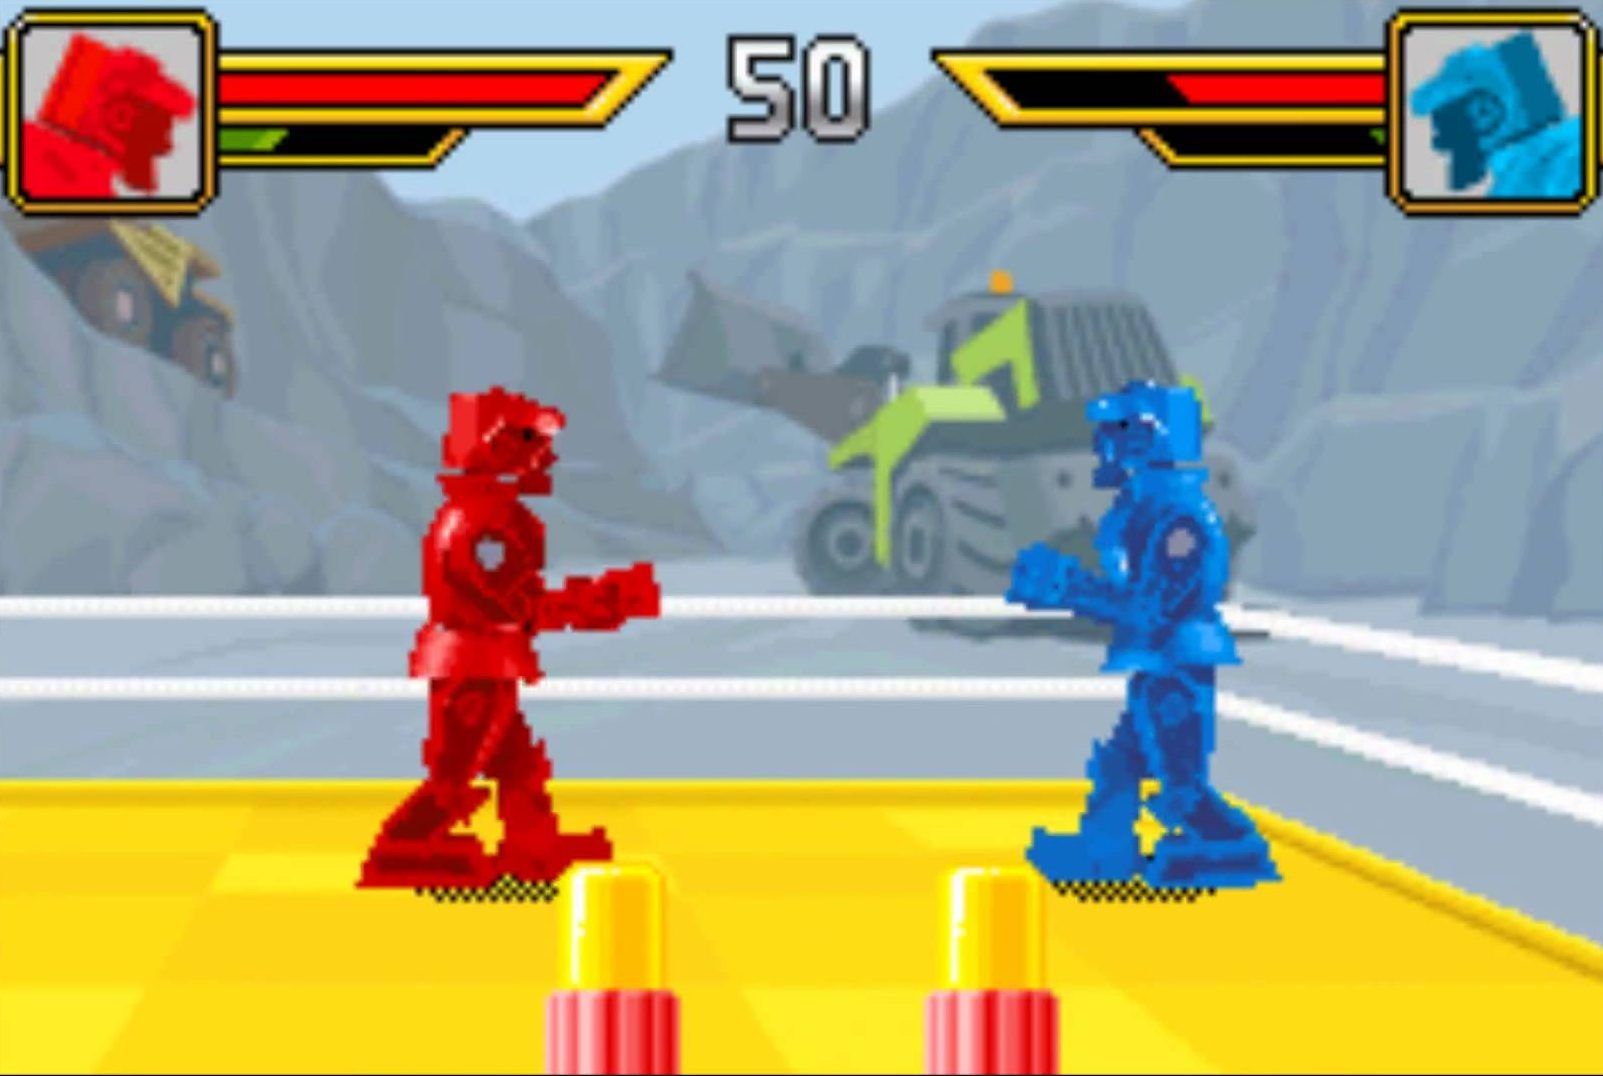 Rock 'em Sock 'em Robots Gameboy Advance